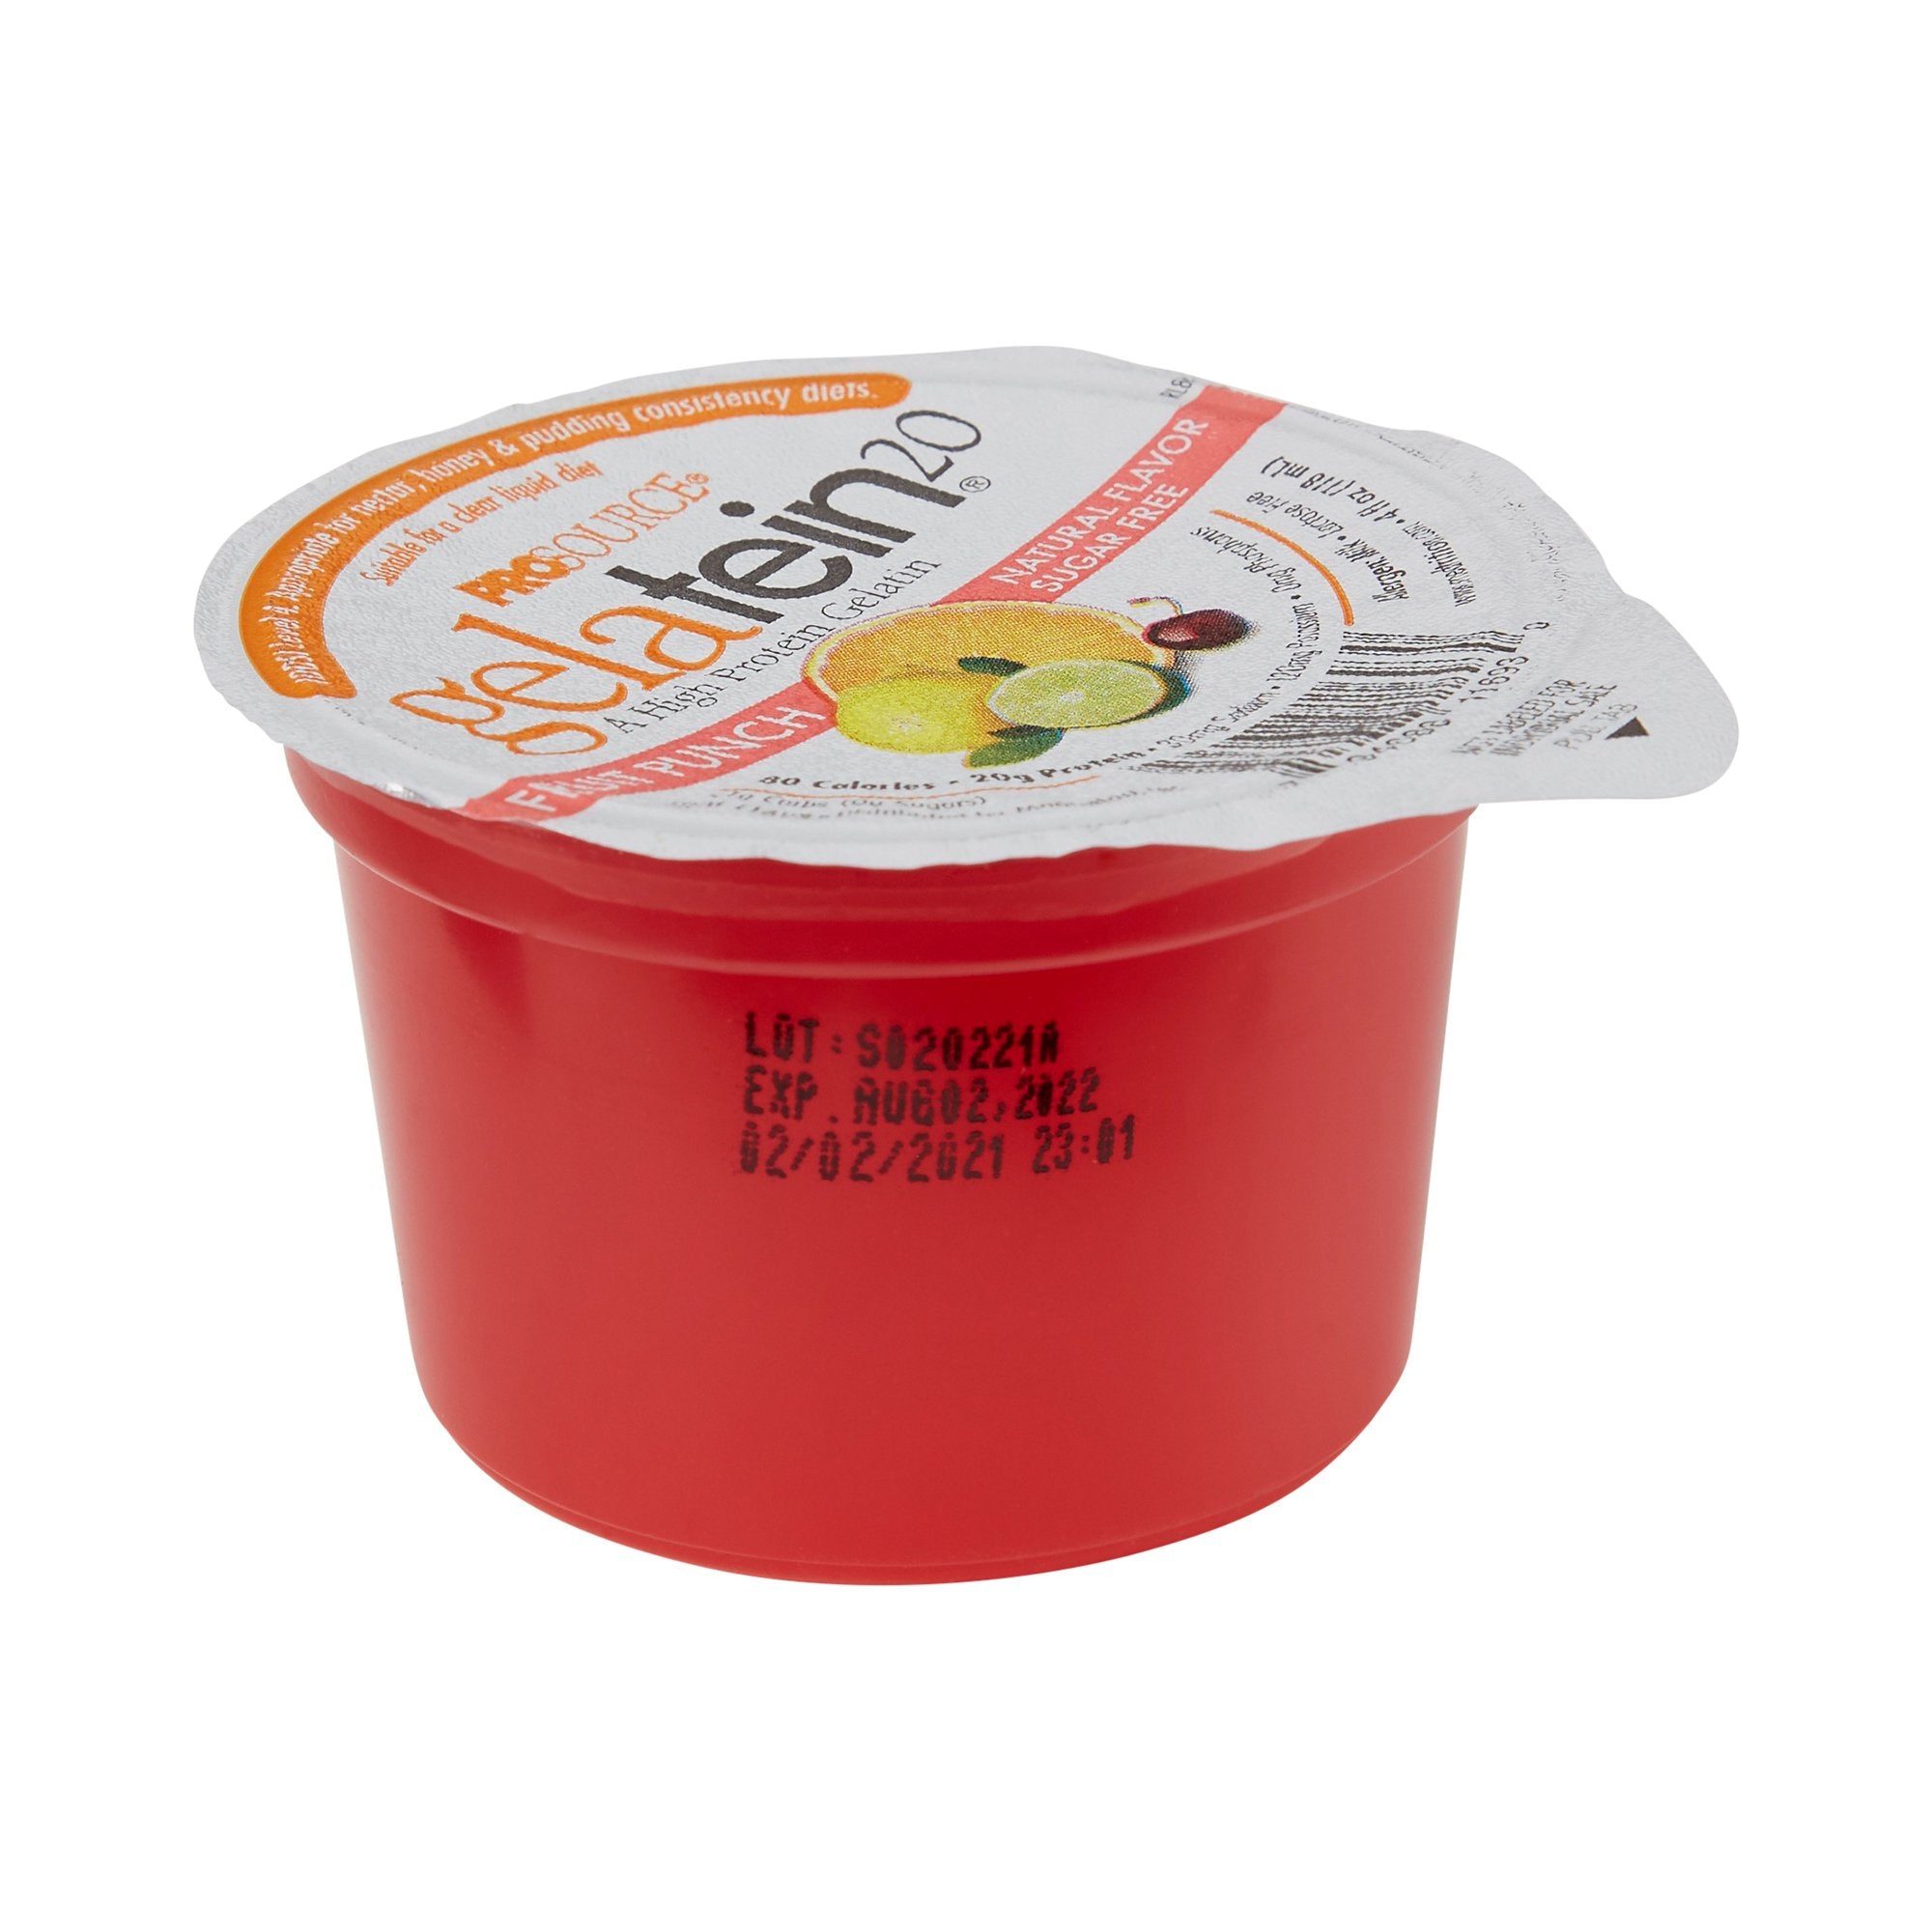 Oral Supplement Gelatein Fruit Punch Flavor Gel 4 oz. Cup